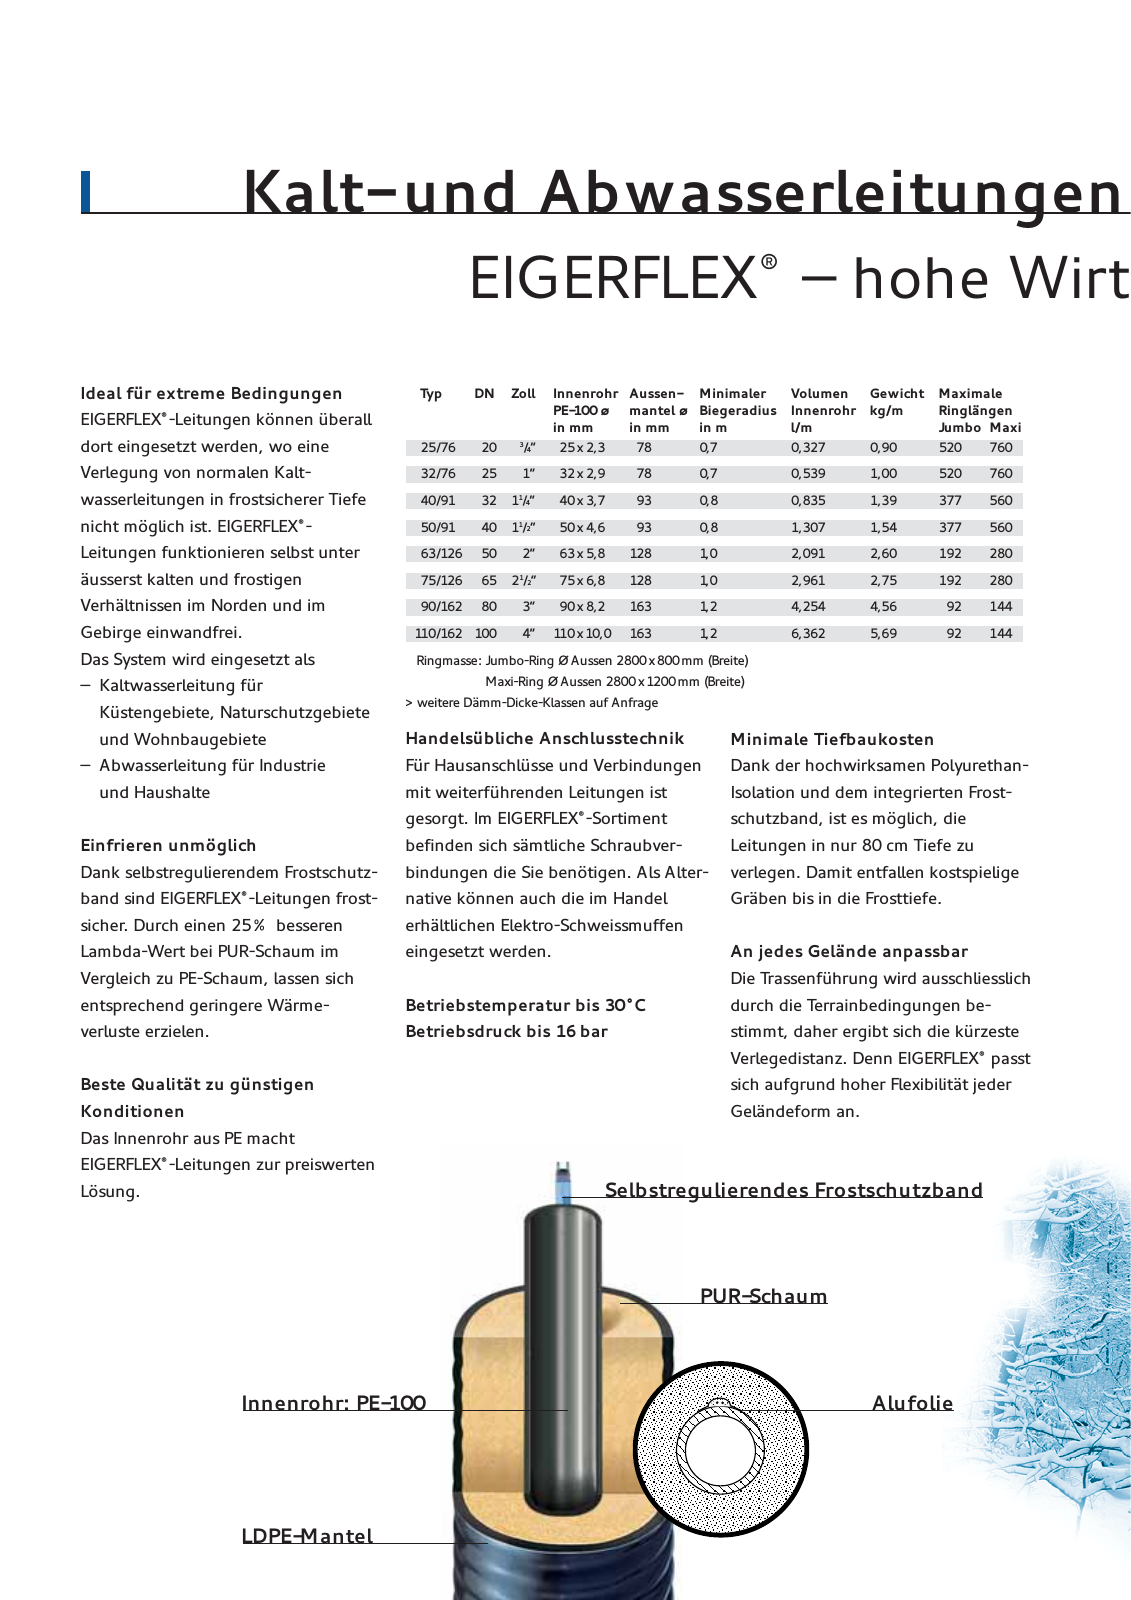 Vorschau Eigerflex Flyer Seite 2